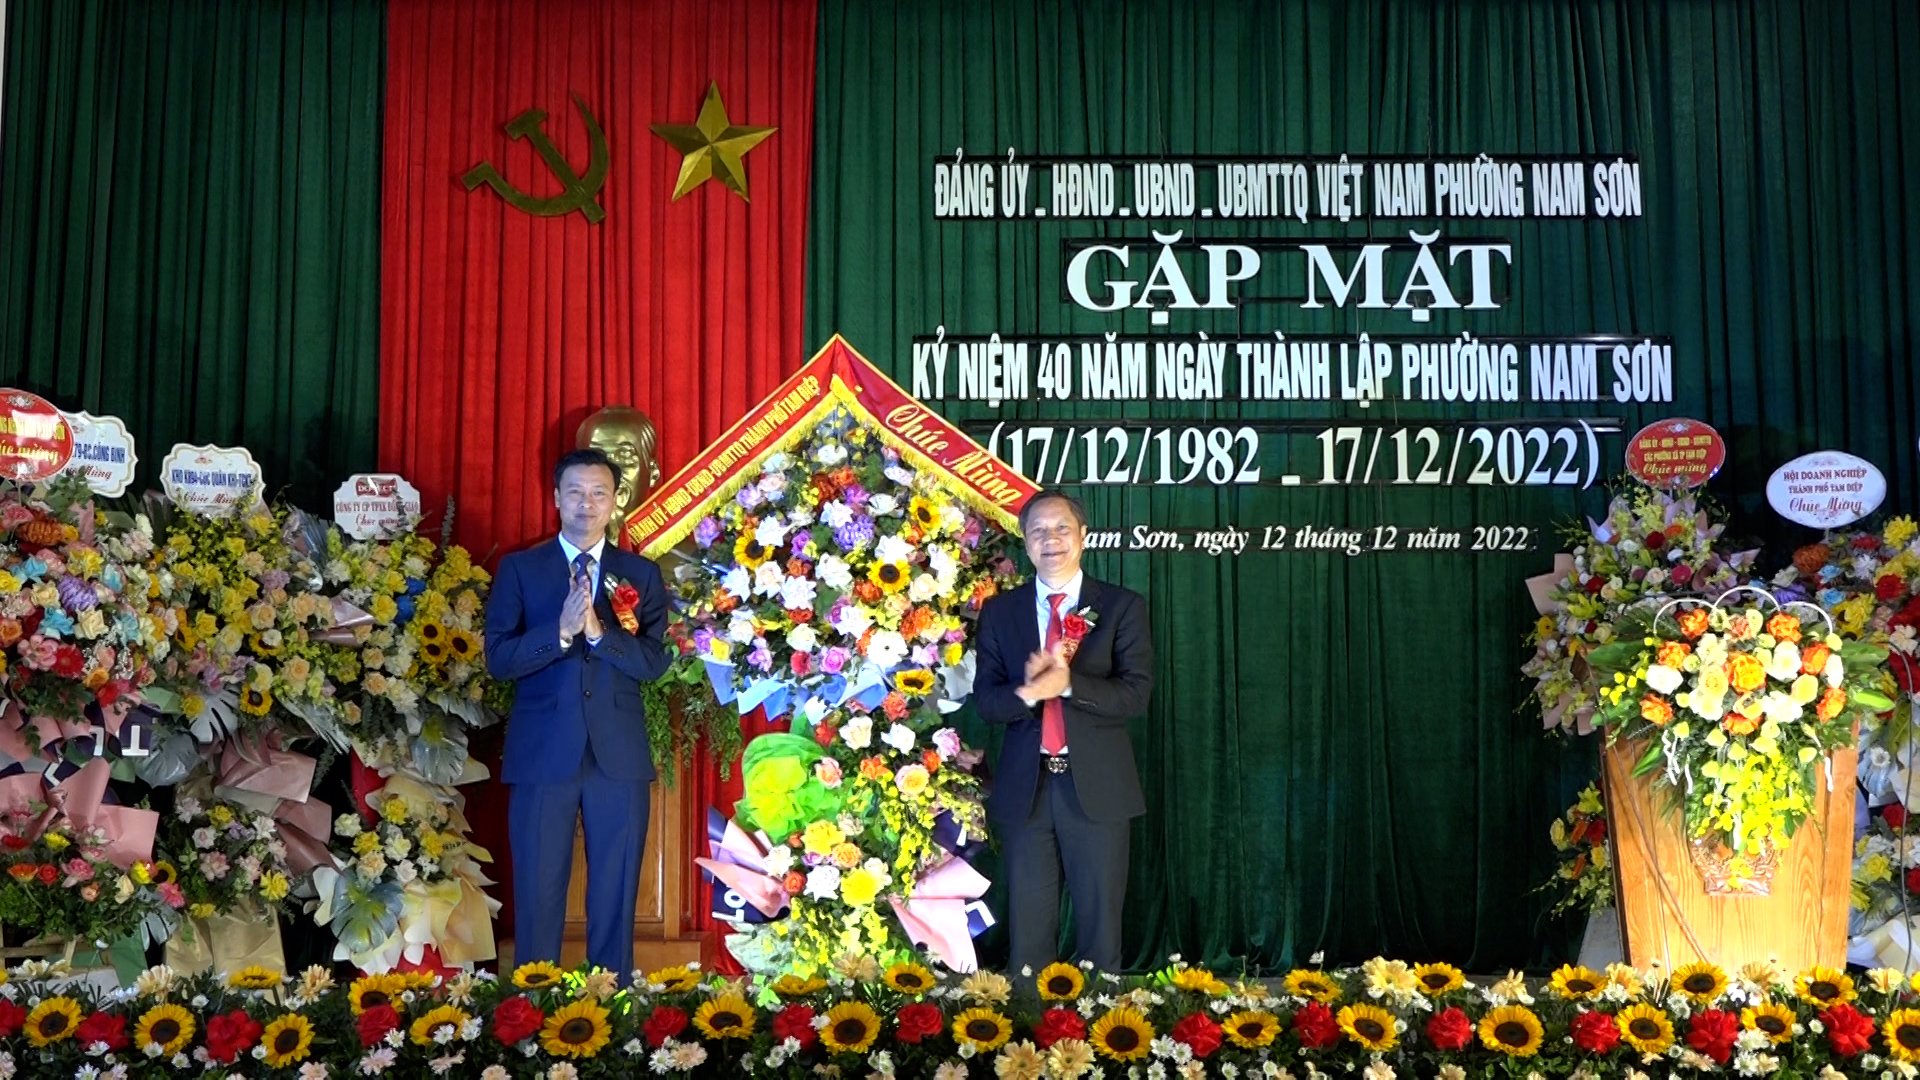 Đảng uỷ - HĐND - UBND - UBMTTQ phường Nam Sơn tổ chức Gặp mặt kỷ niệm 40 năm ngày thành lập phường (17/12/1982-17/12/2022)